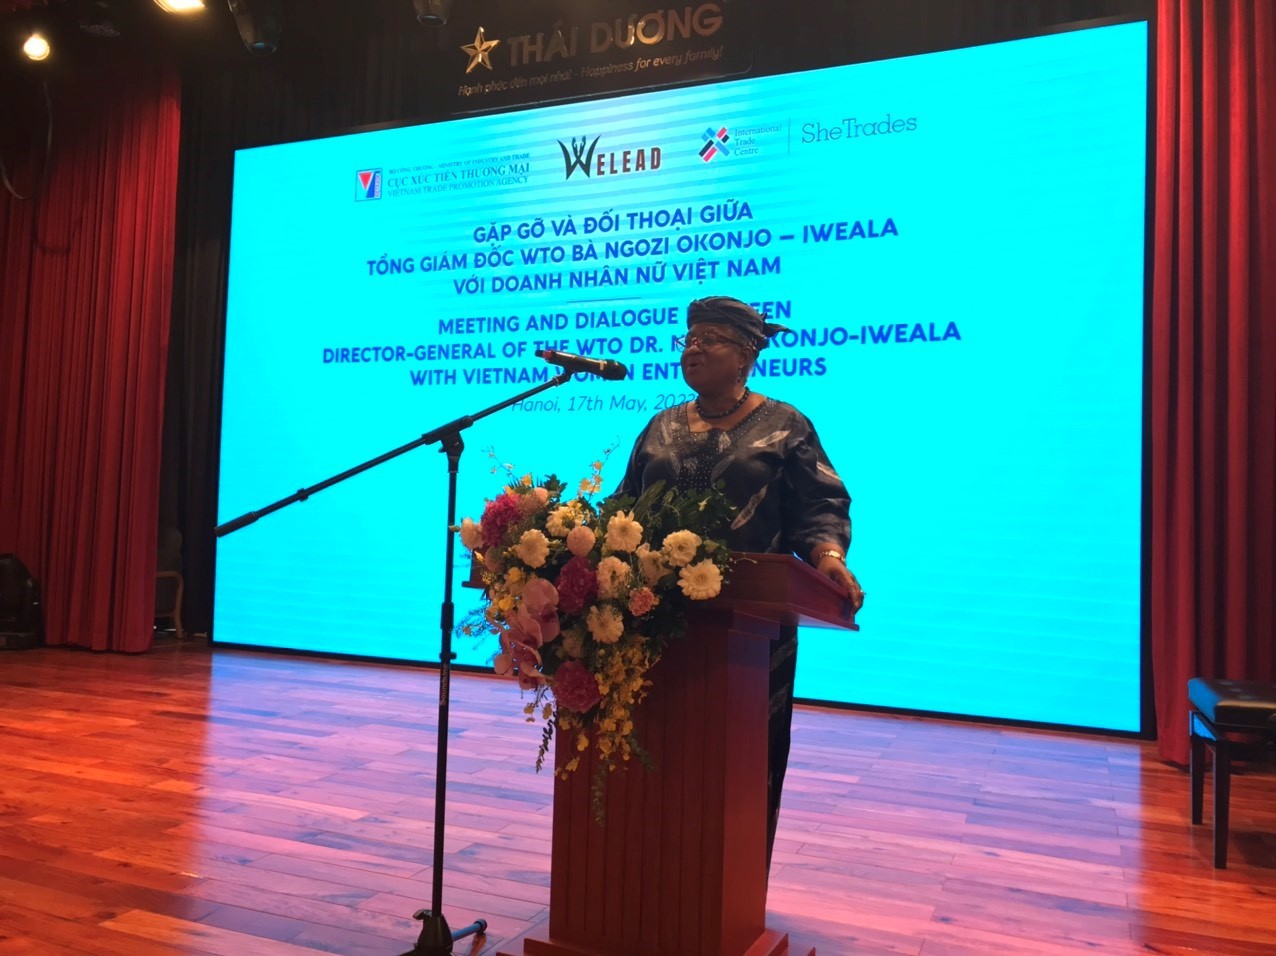 Tổng Giám đốc WTO Ngozi Okonzio Iweala  gặp gỡ và đối thoại với  hơn 50 nữ doanh nhân Việt